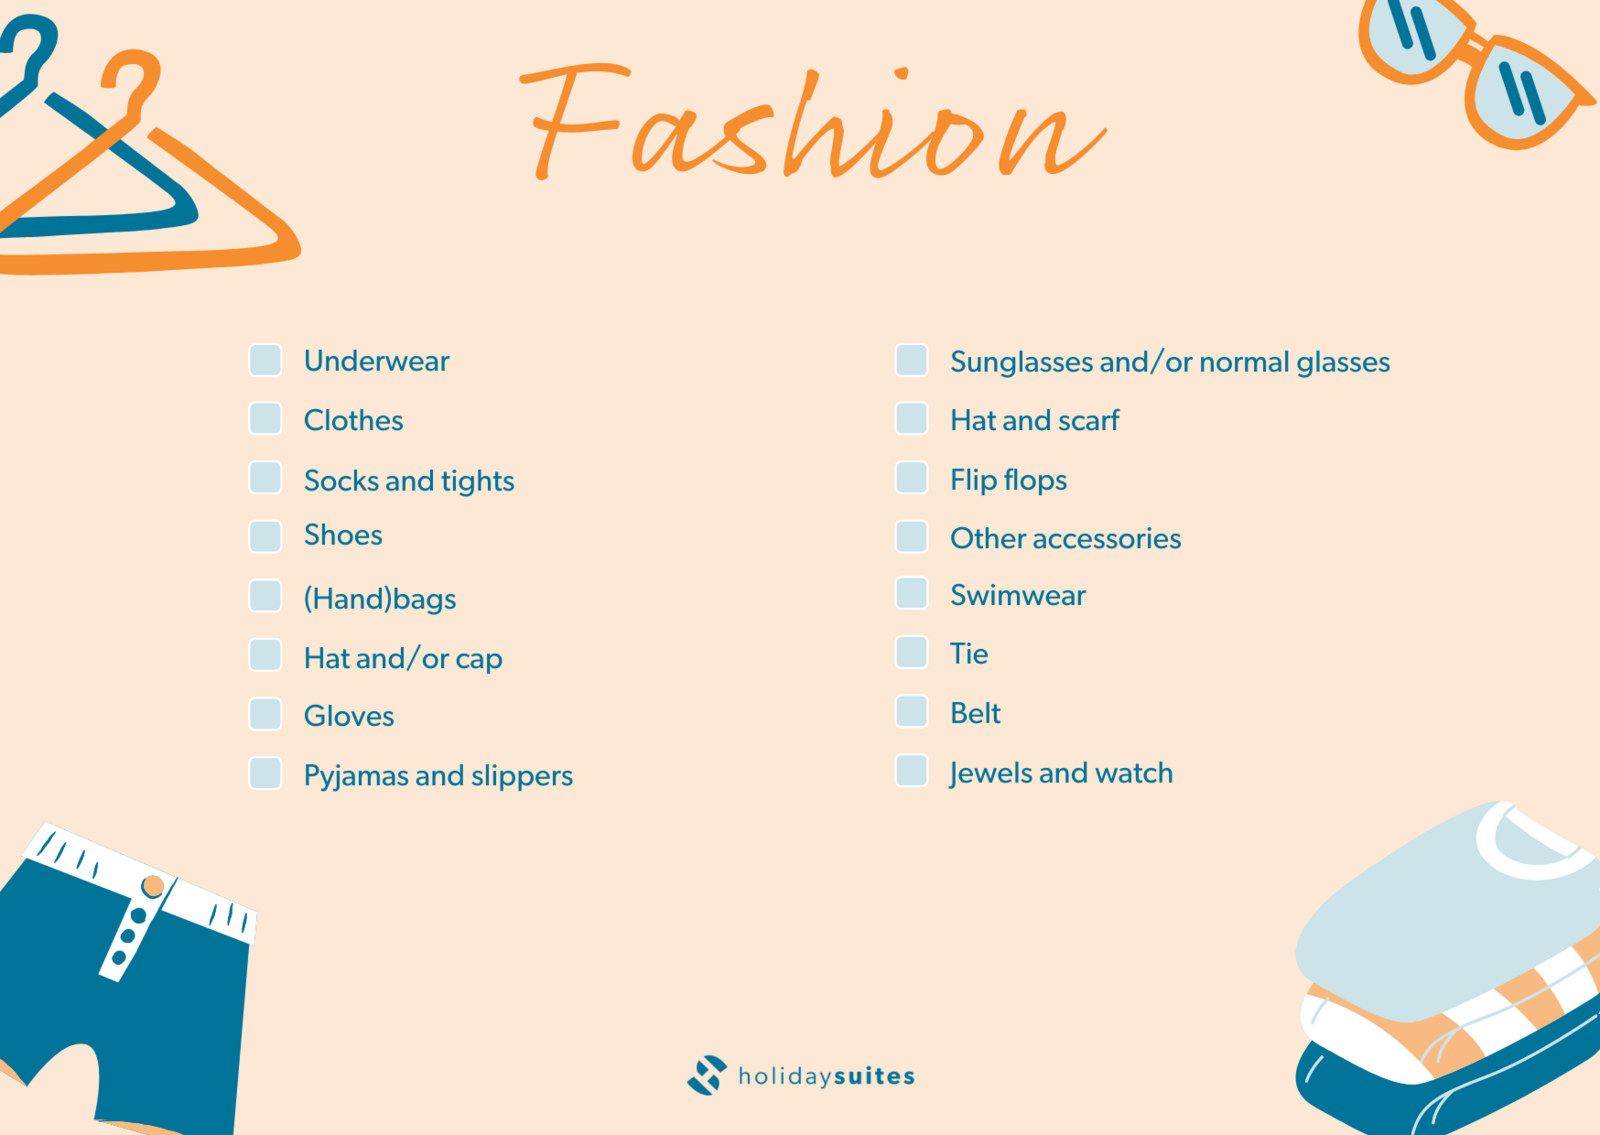 Luggage checklist - fashion